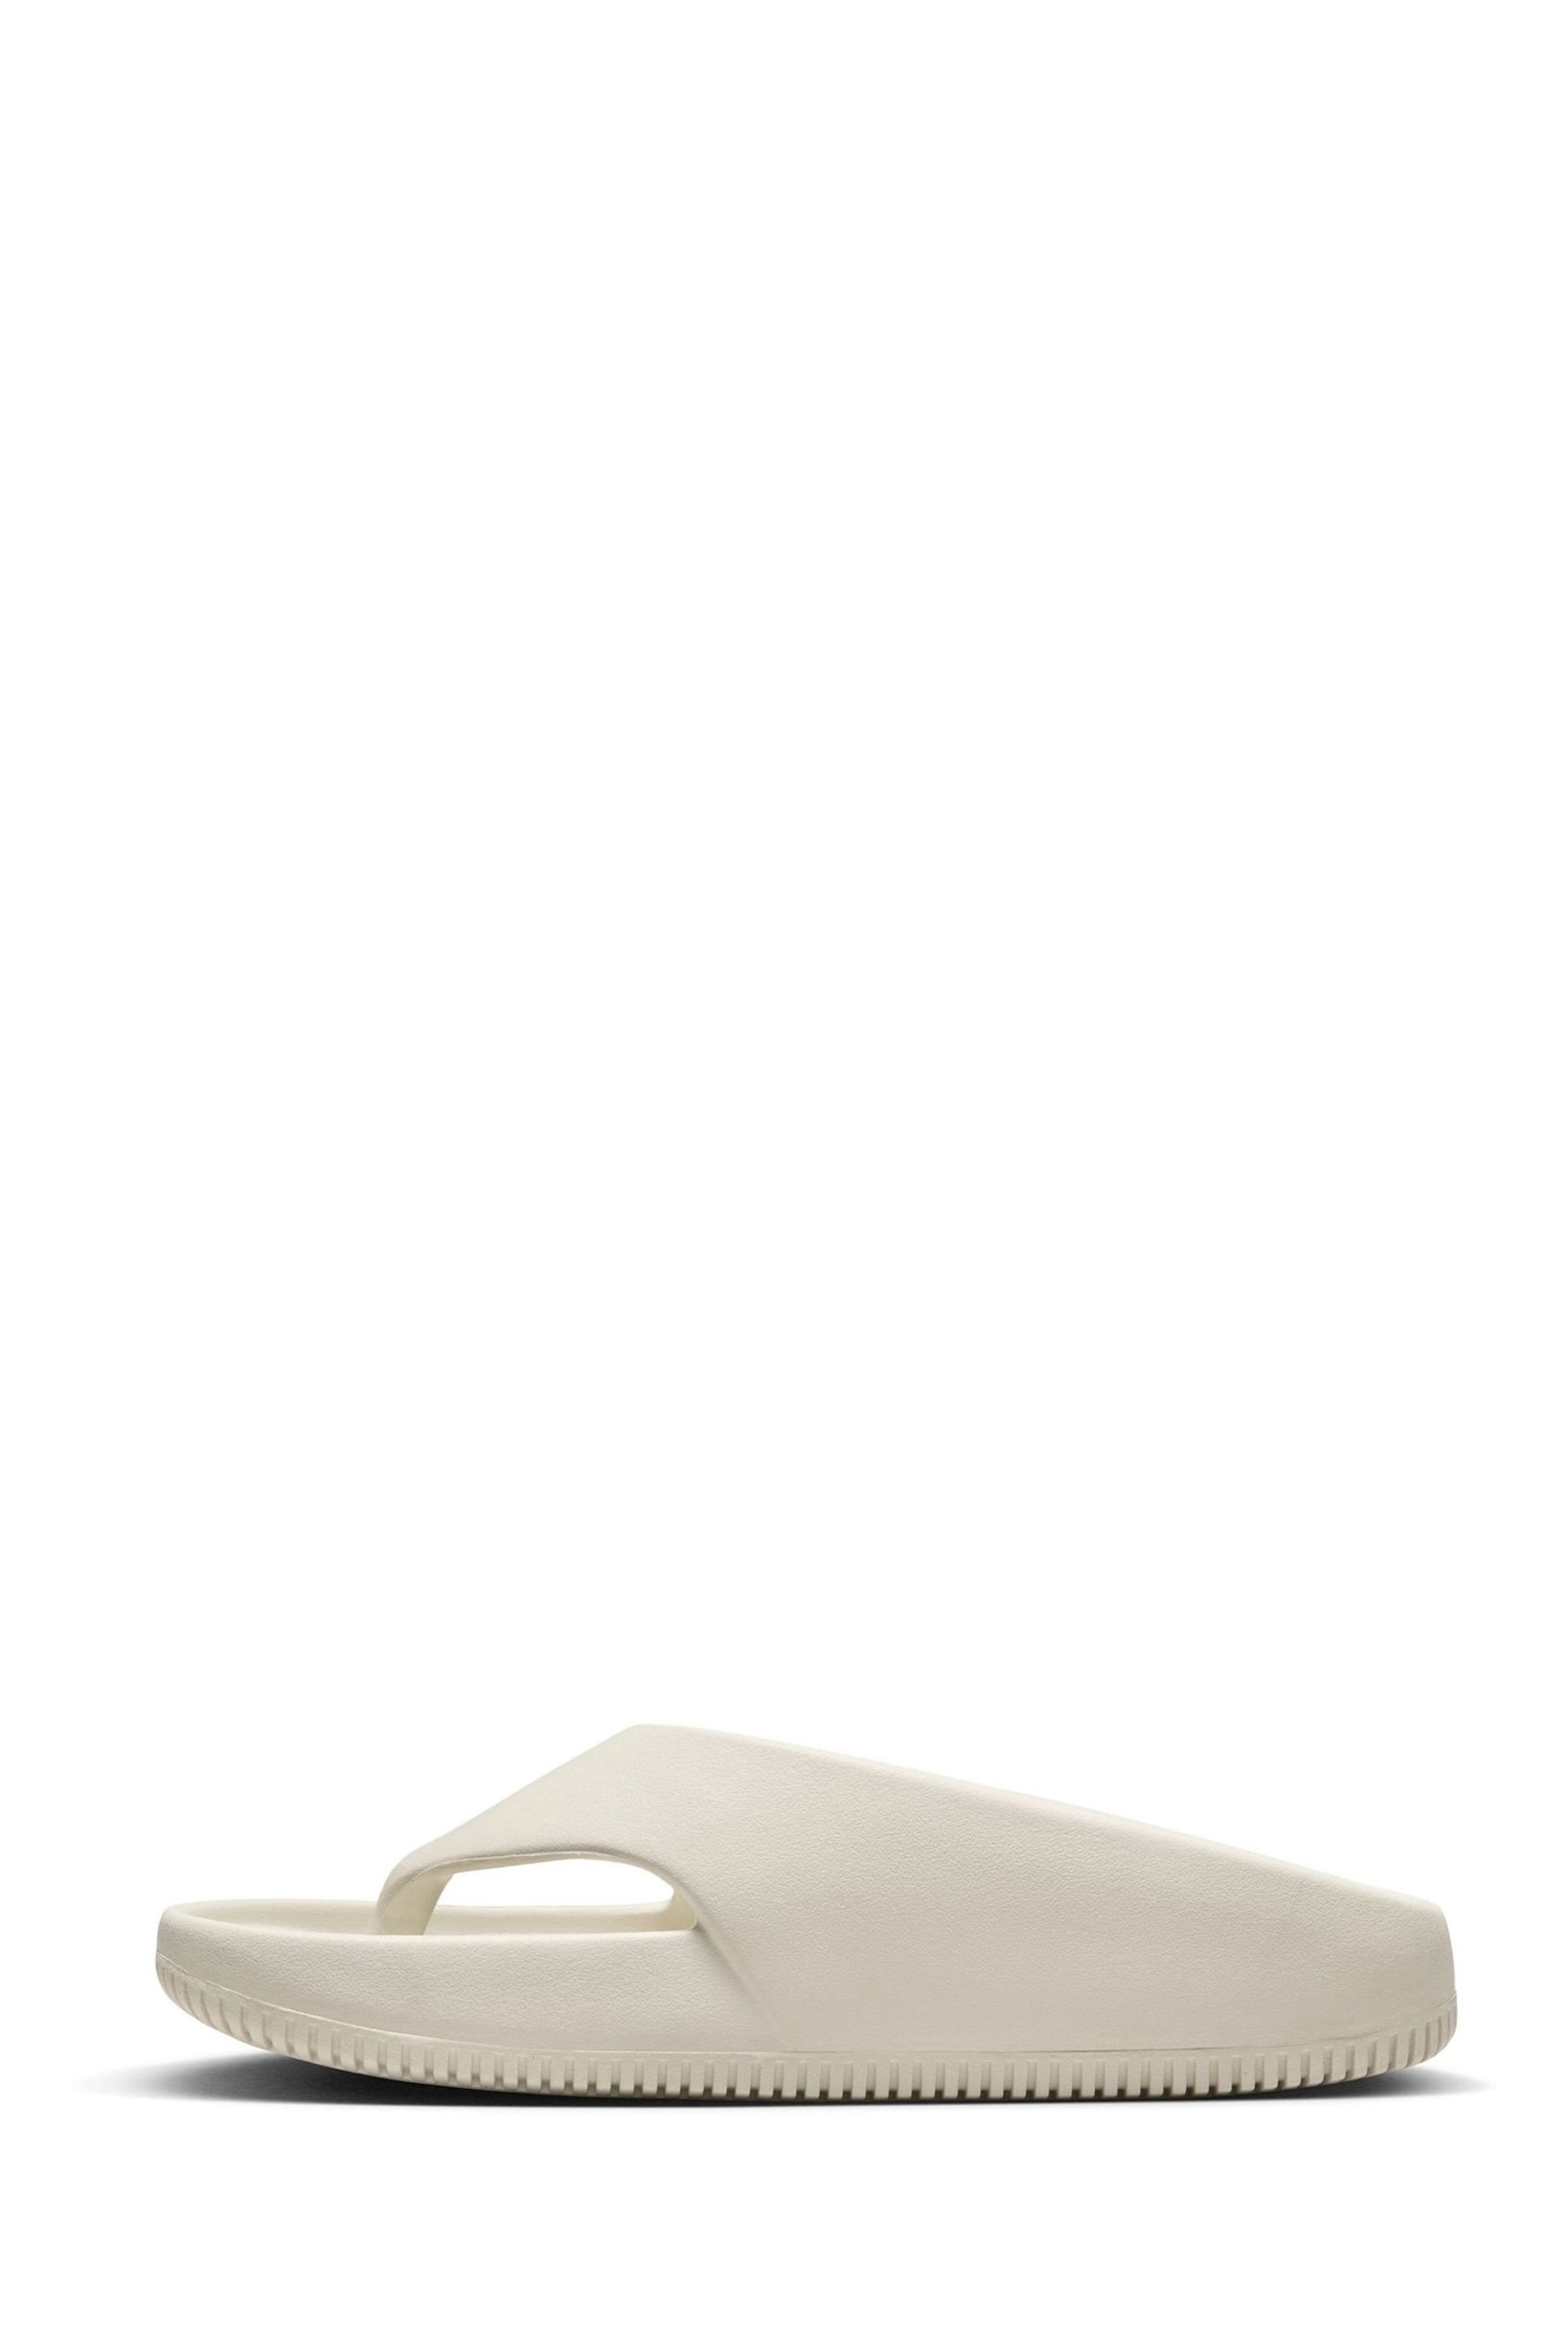 Nike White Calm Flip Flops - Image 2 of 10